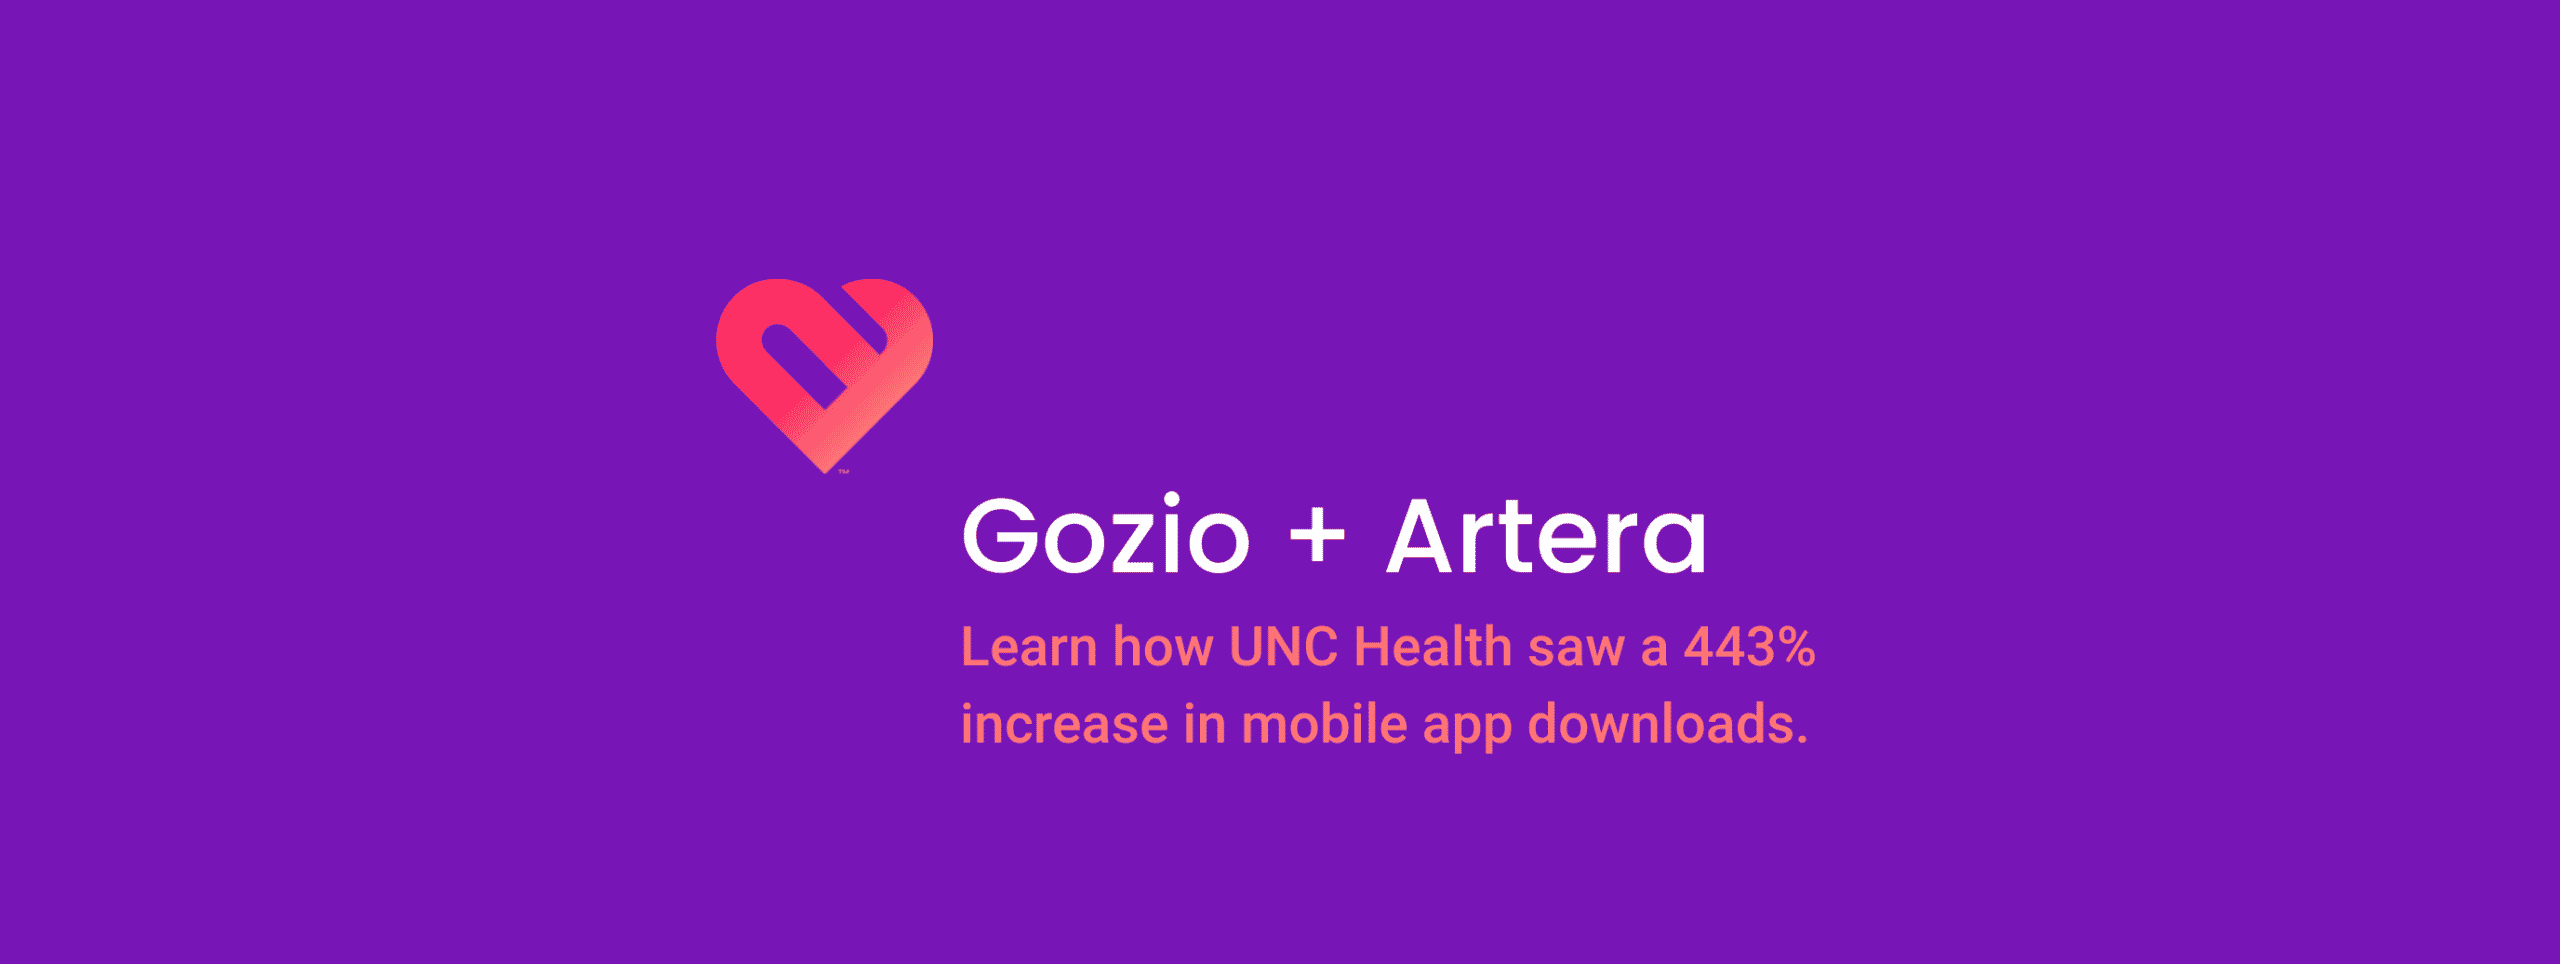 UNC Health Gozio Artera header